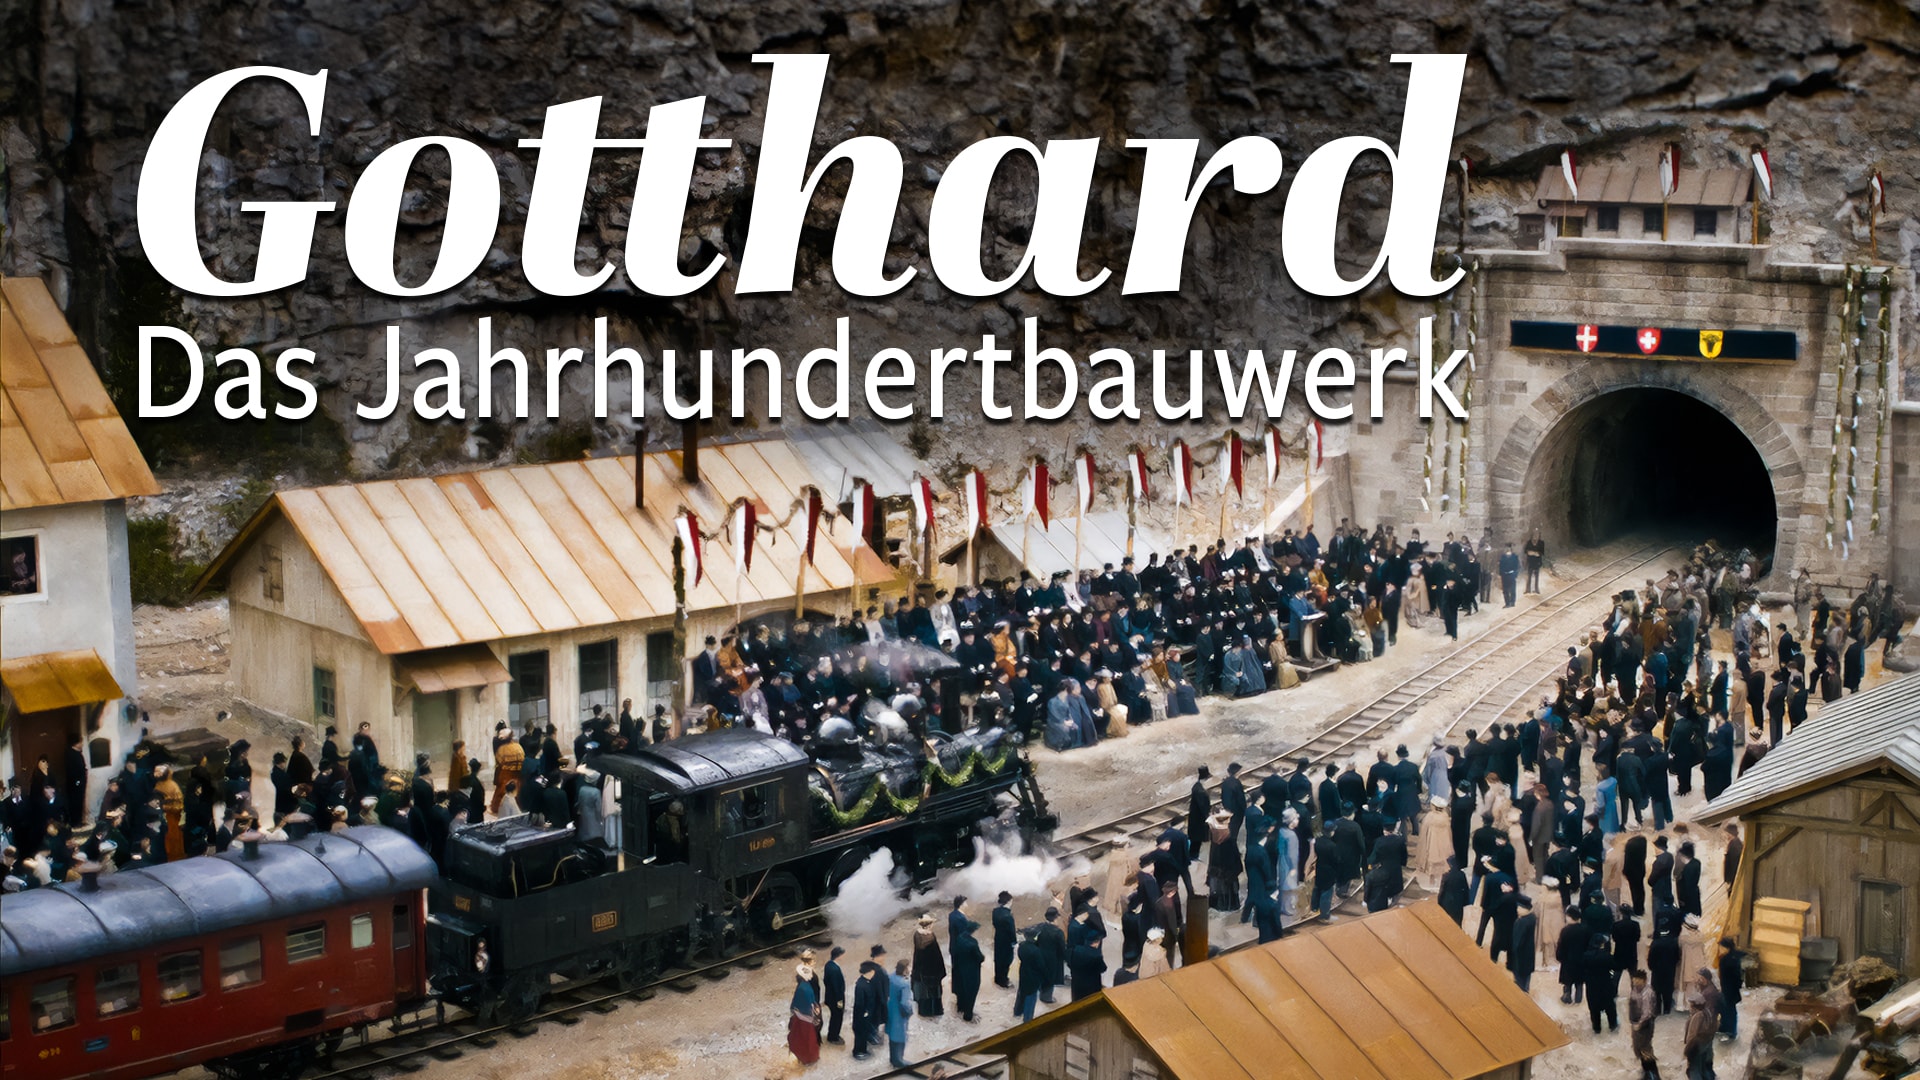 Gotthard - Das Jahrhundertbauwerk